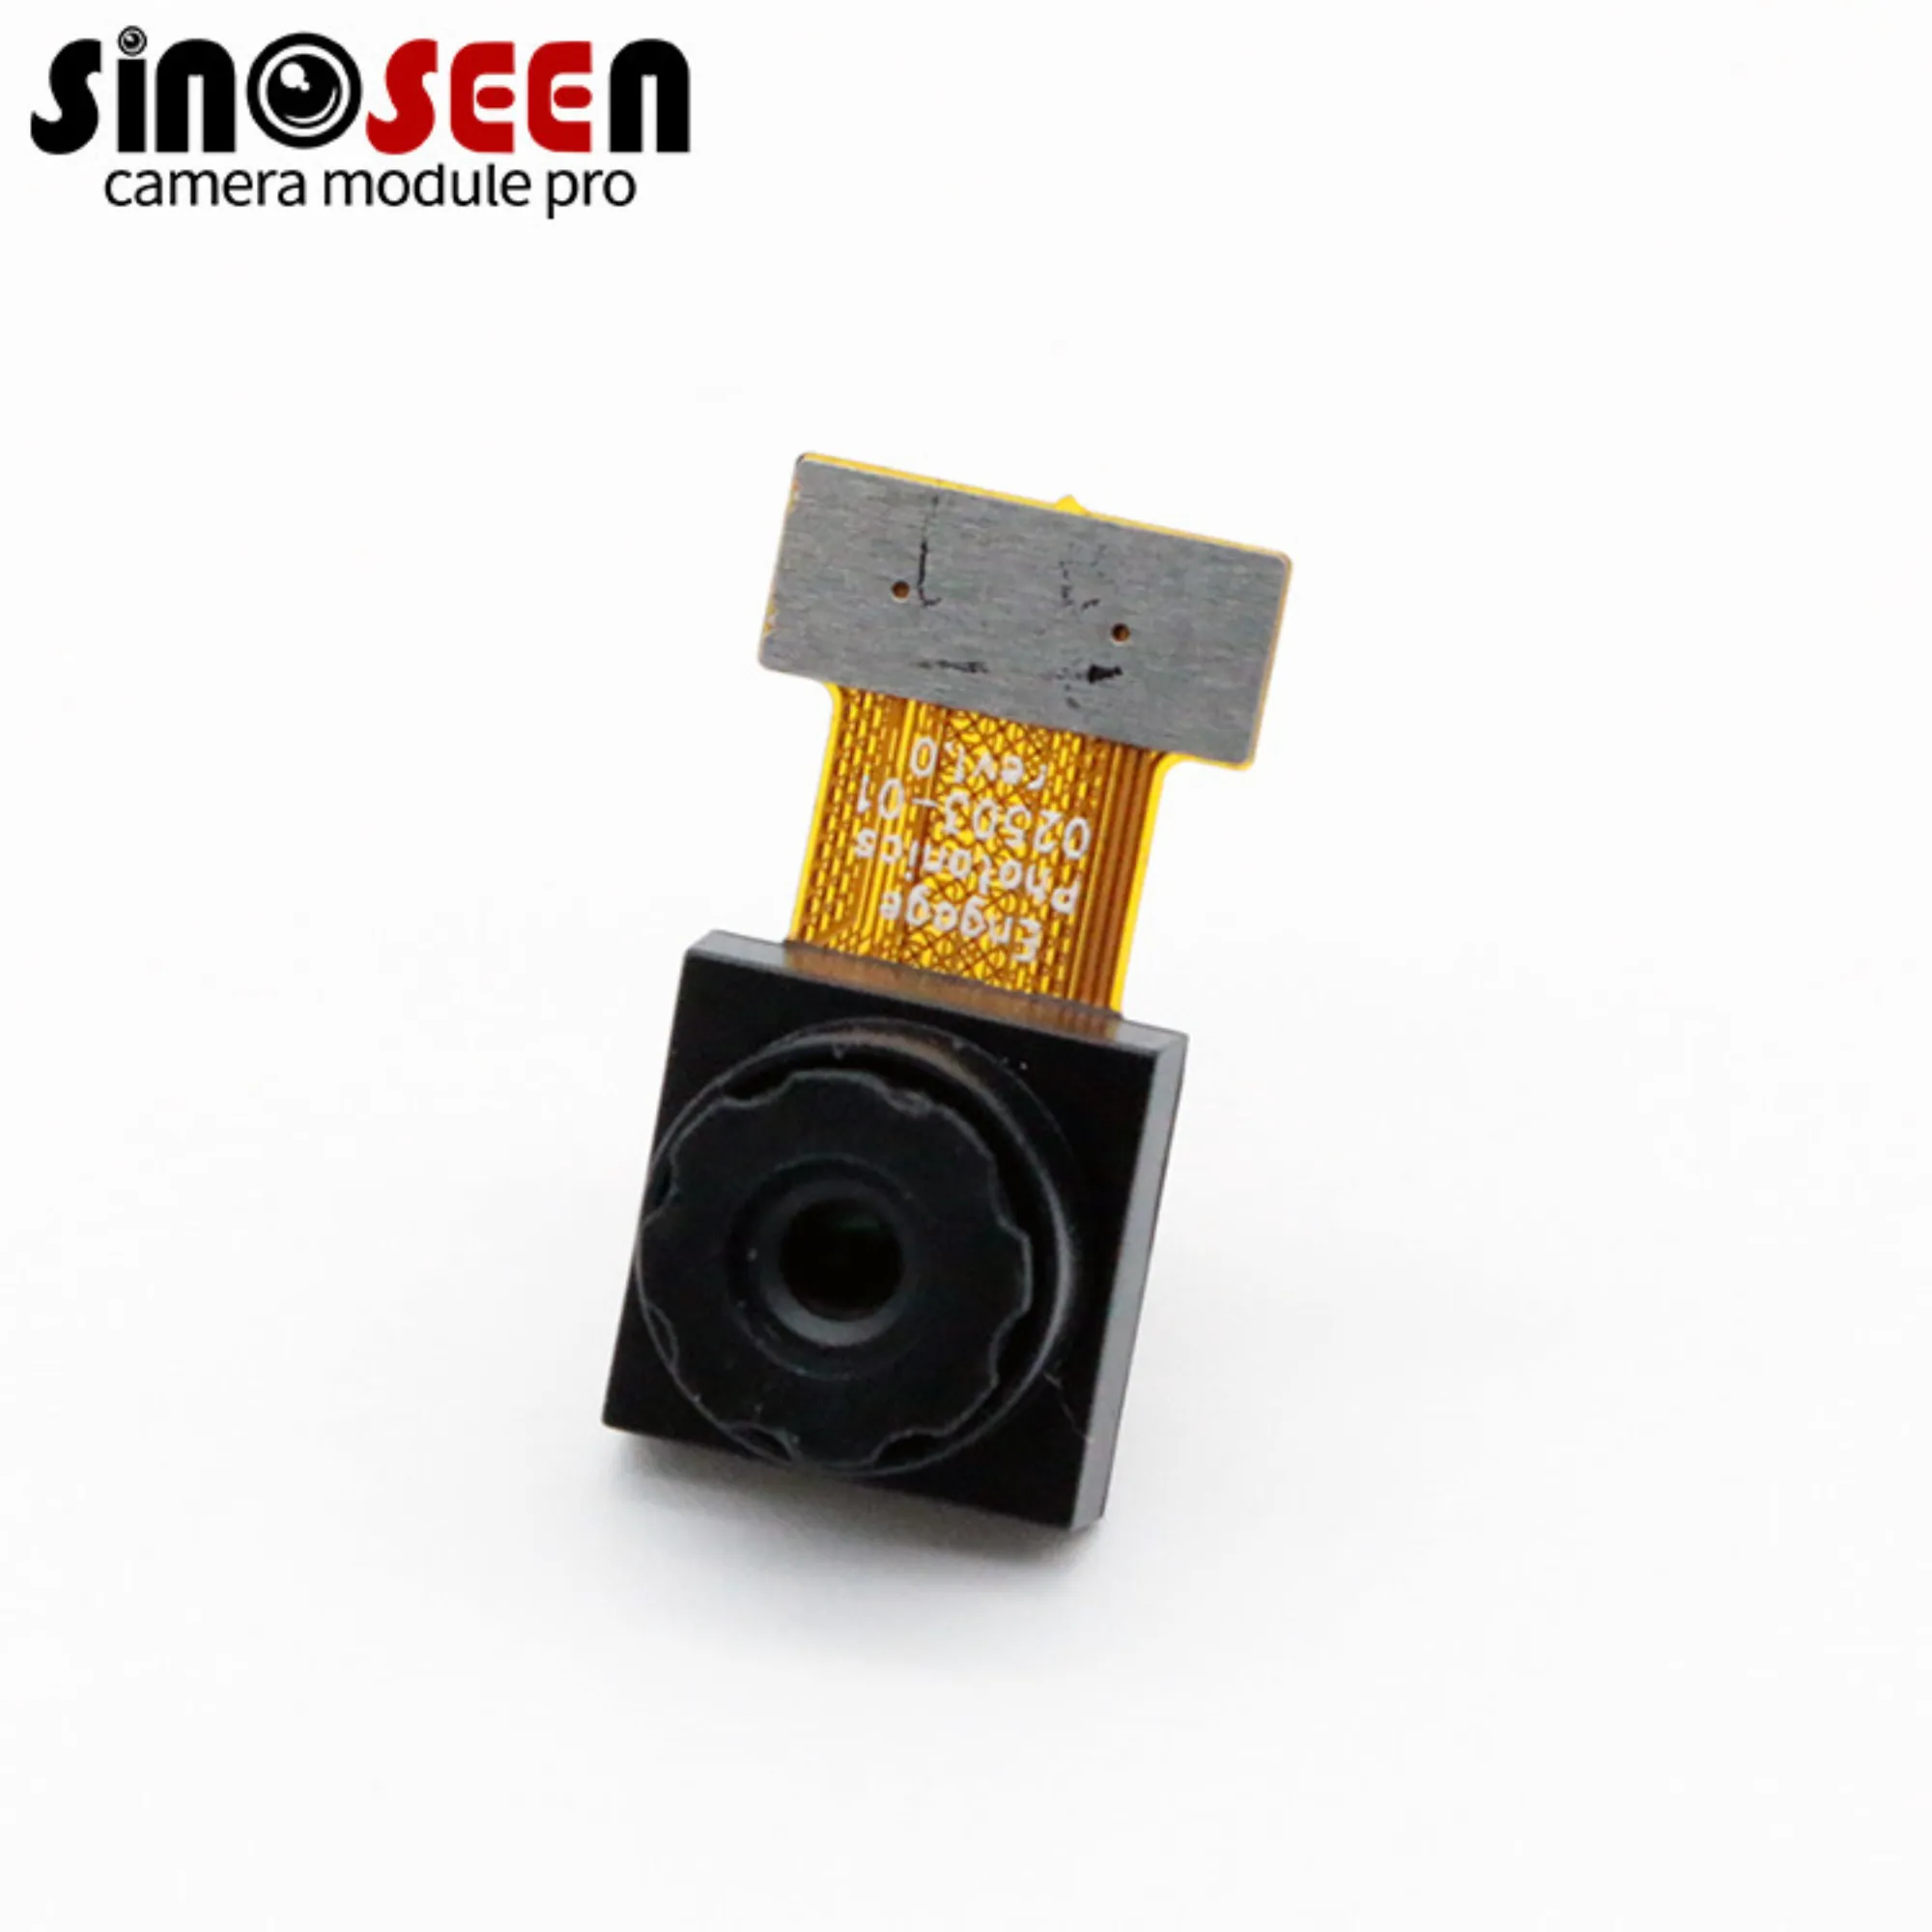 1/2.75 Inch OV32A1Q Sensor ABLC Full HD MIPI Camera Module